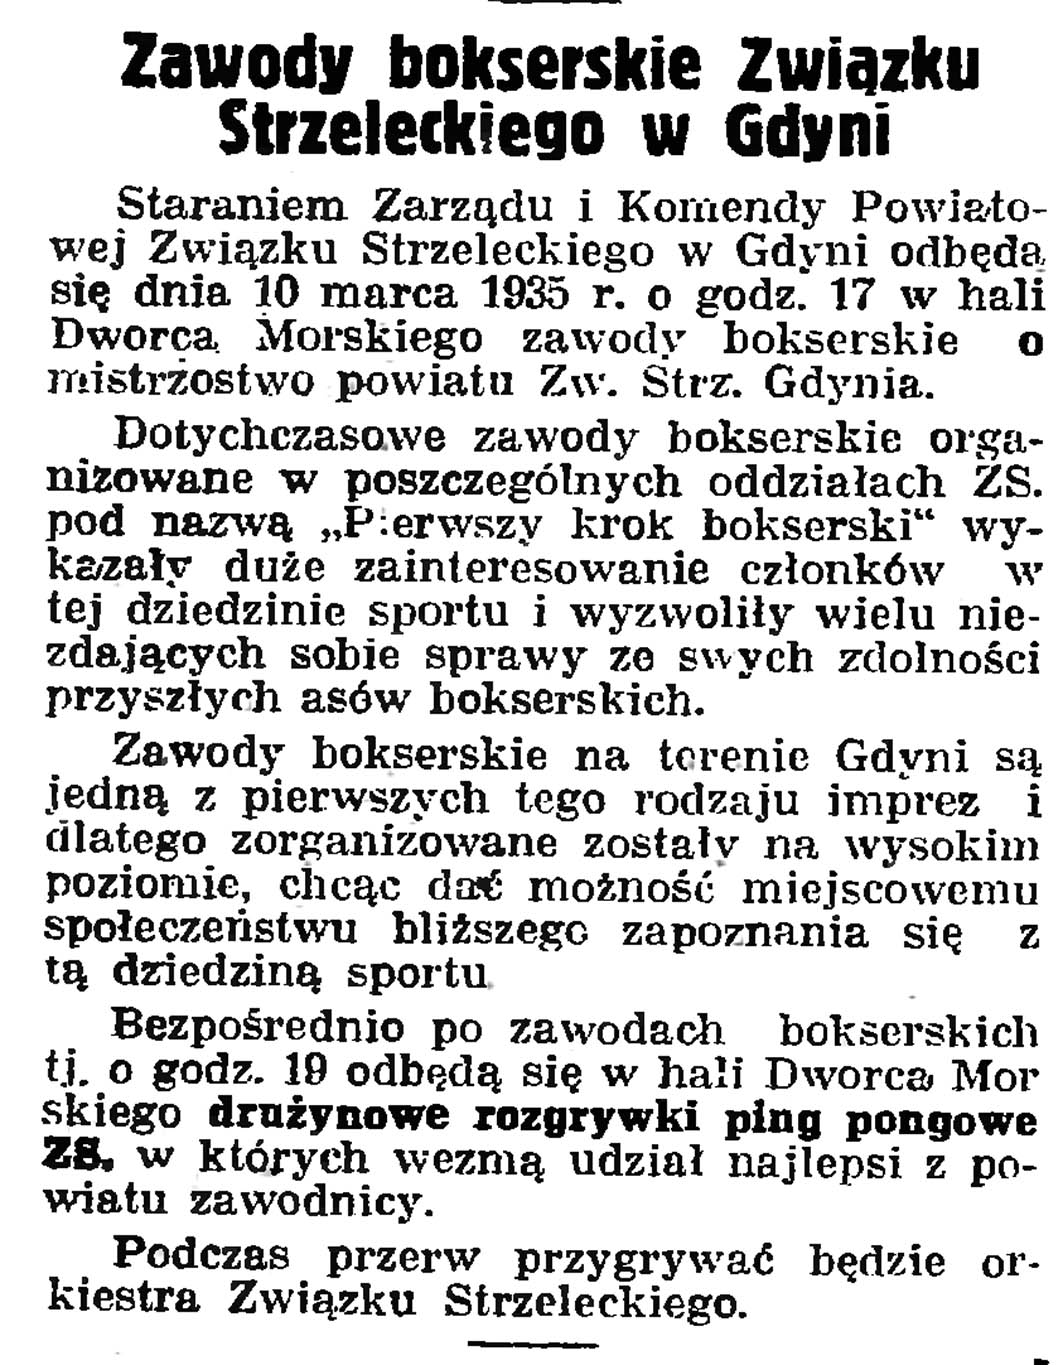 Zawody bokserskie Związku Strzeleckiego w Gdyni // Gazeta Gdańska. - 1935, nr 57, s. 8